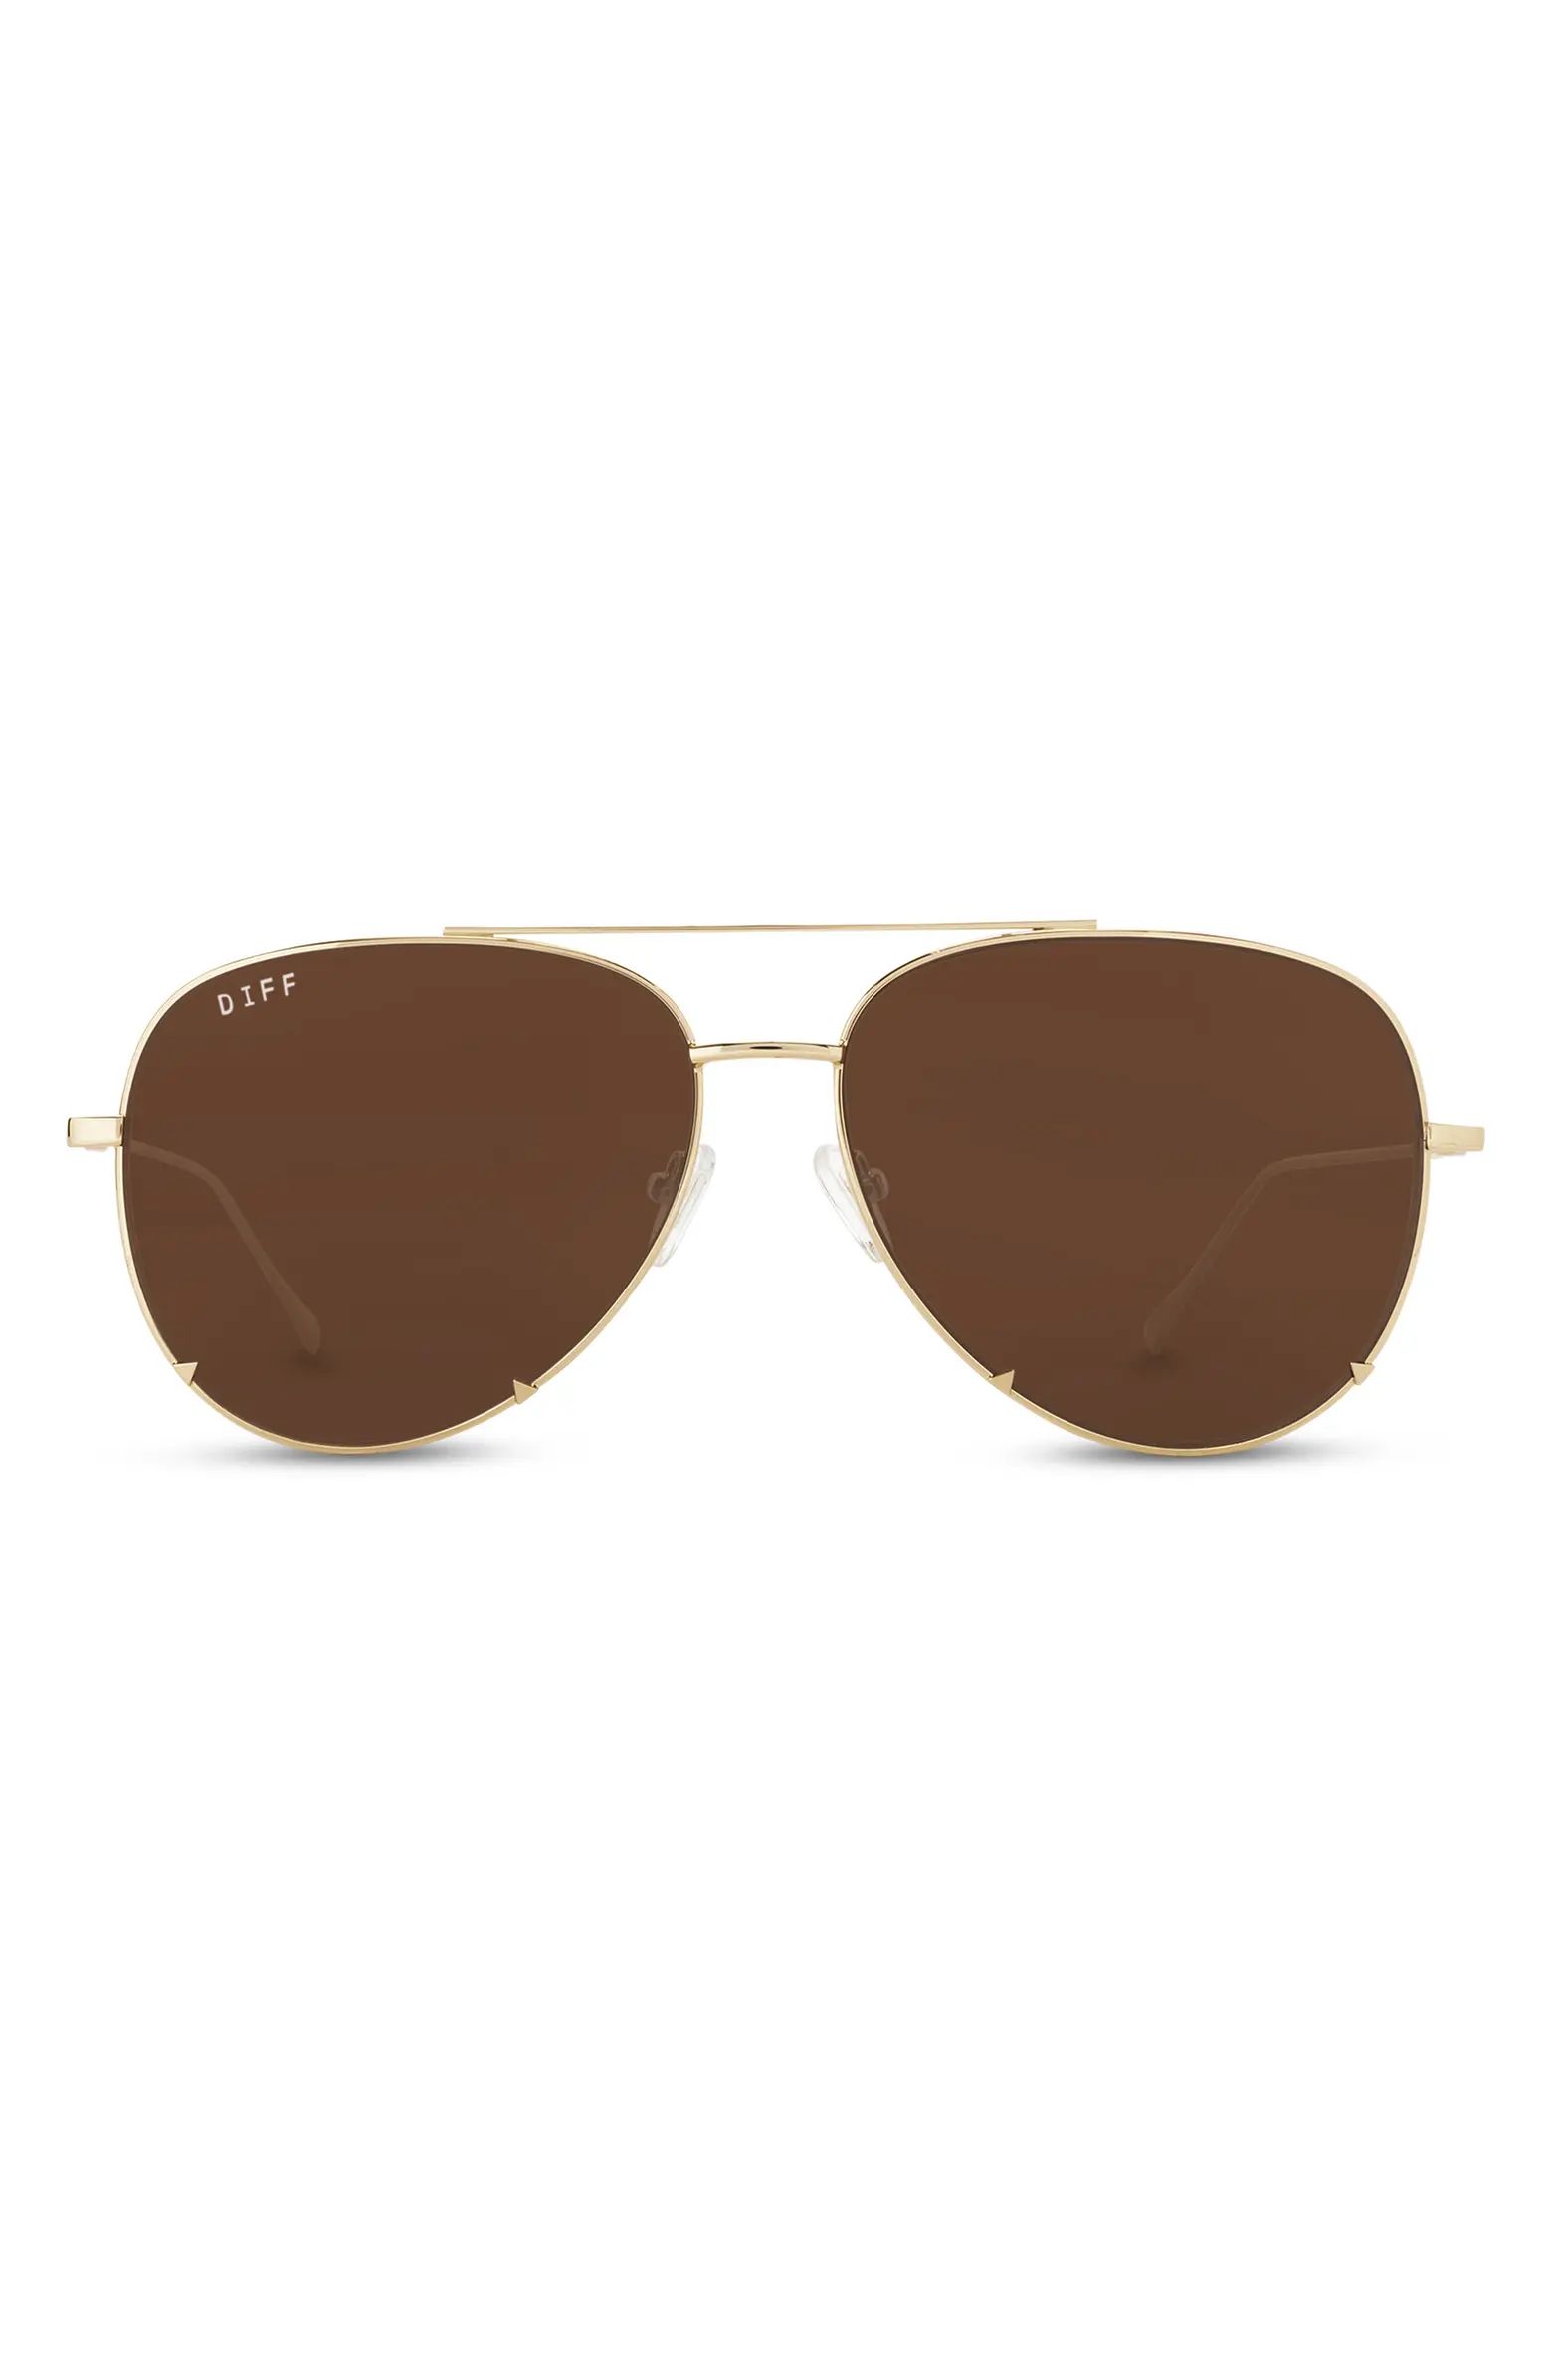 DIFF 63mm Scarlett Sunglasses | Nordstromrack | Nordstrom Rack